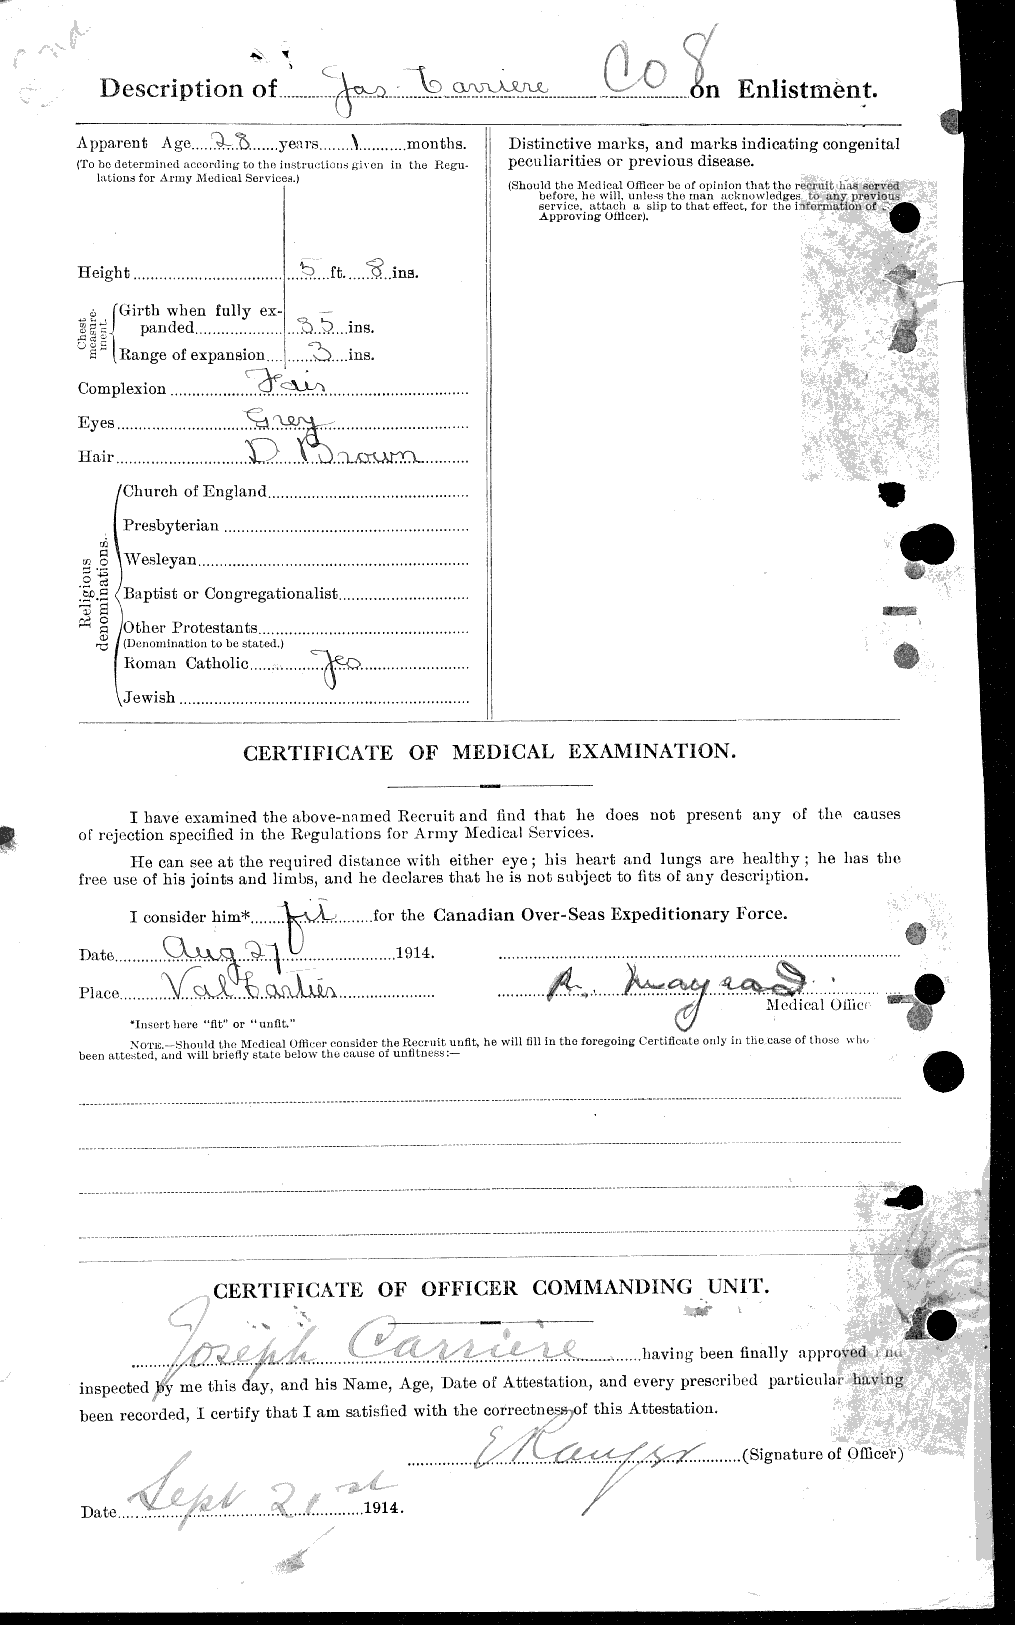 Dossiers du Personnel de la Première Guerre mondiale - CEC 010569b